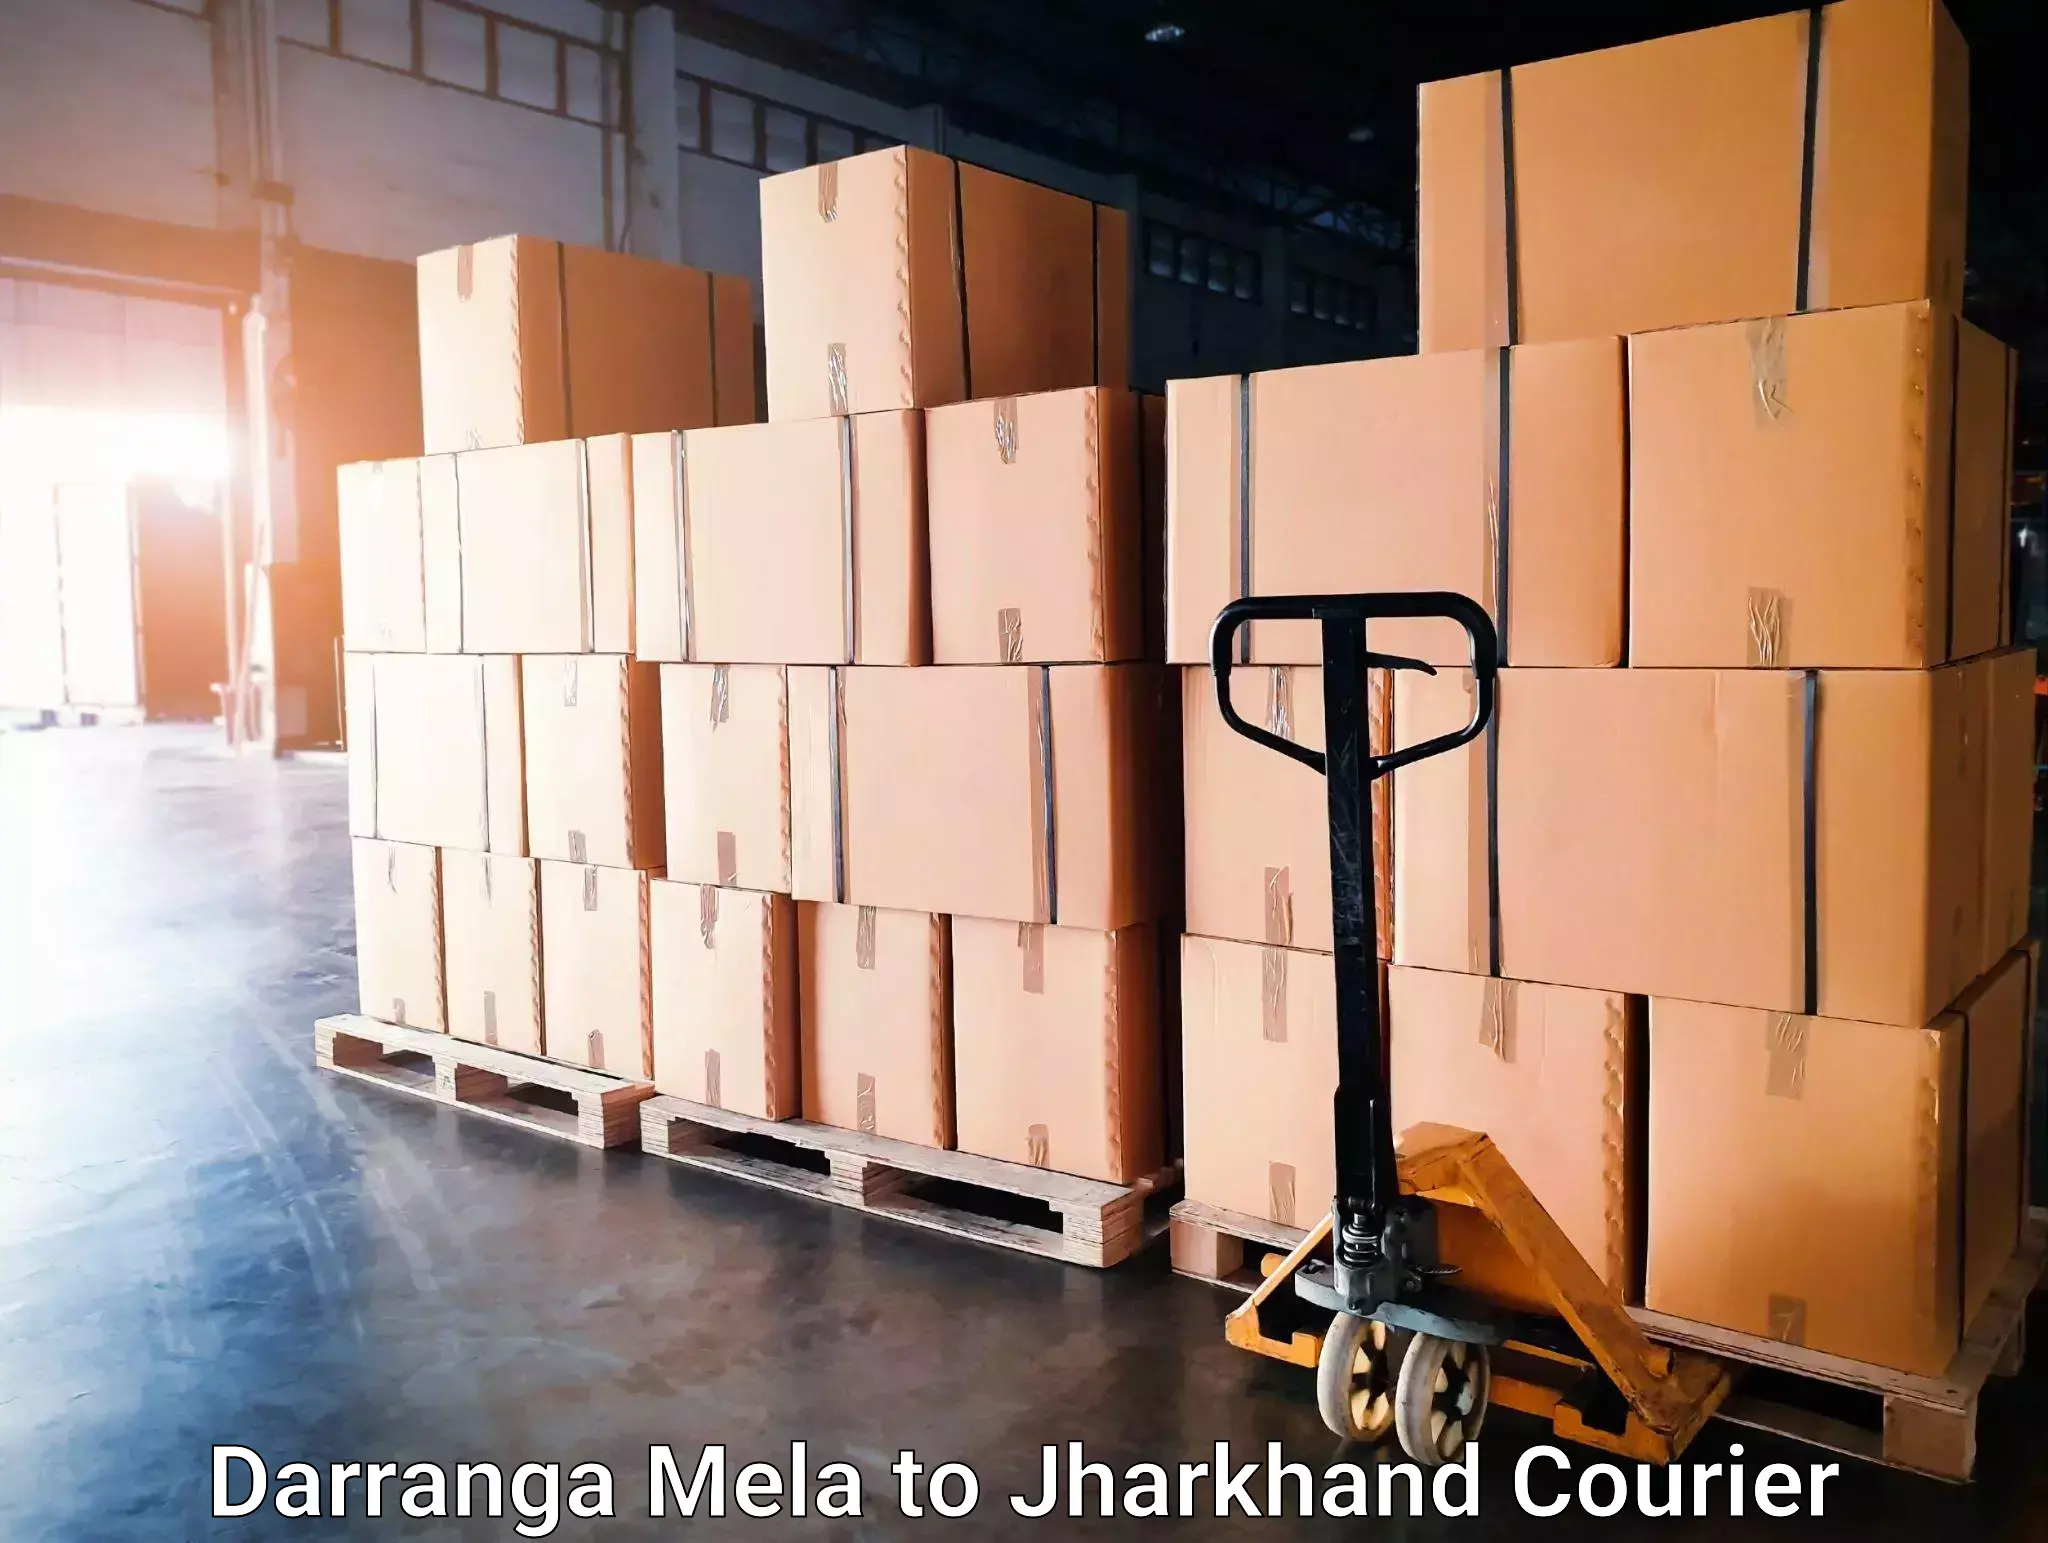 International courier networks Darranga Mela to Phusro